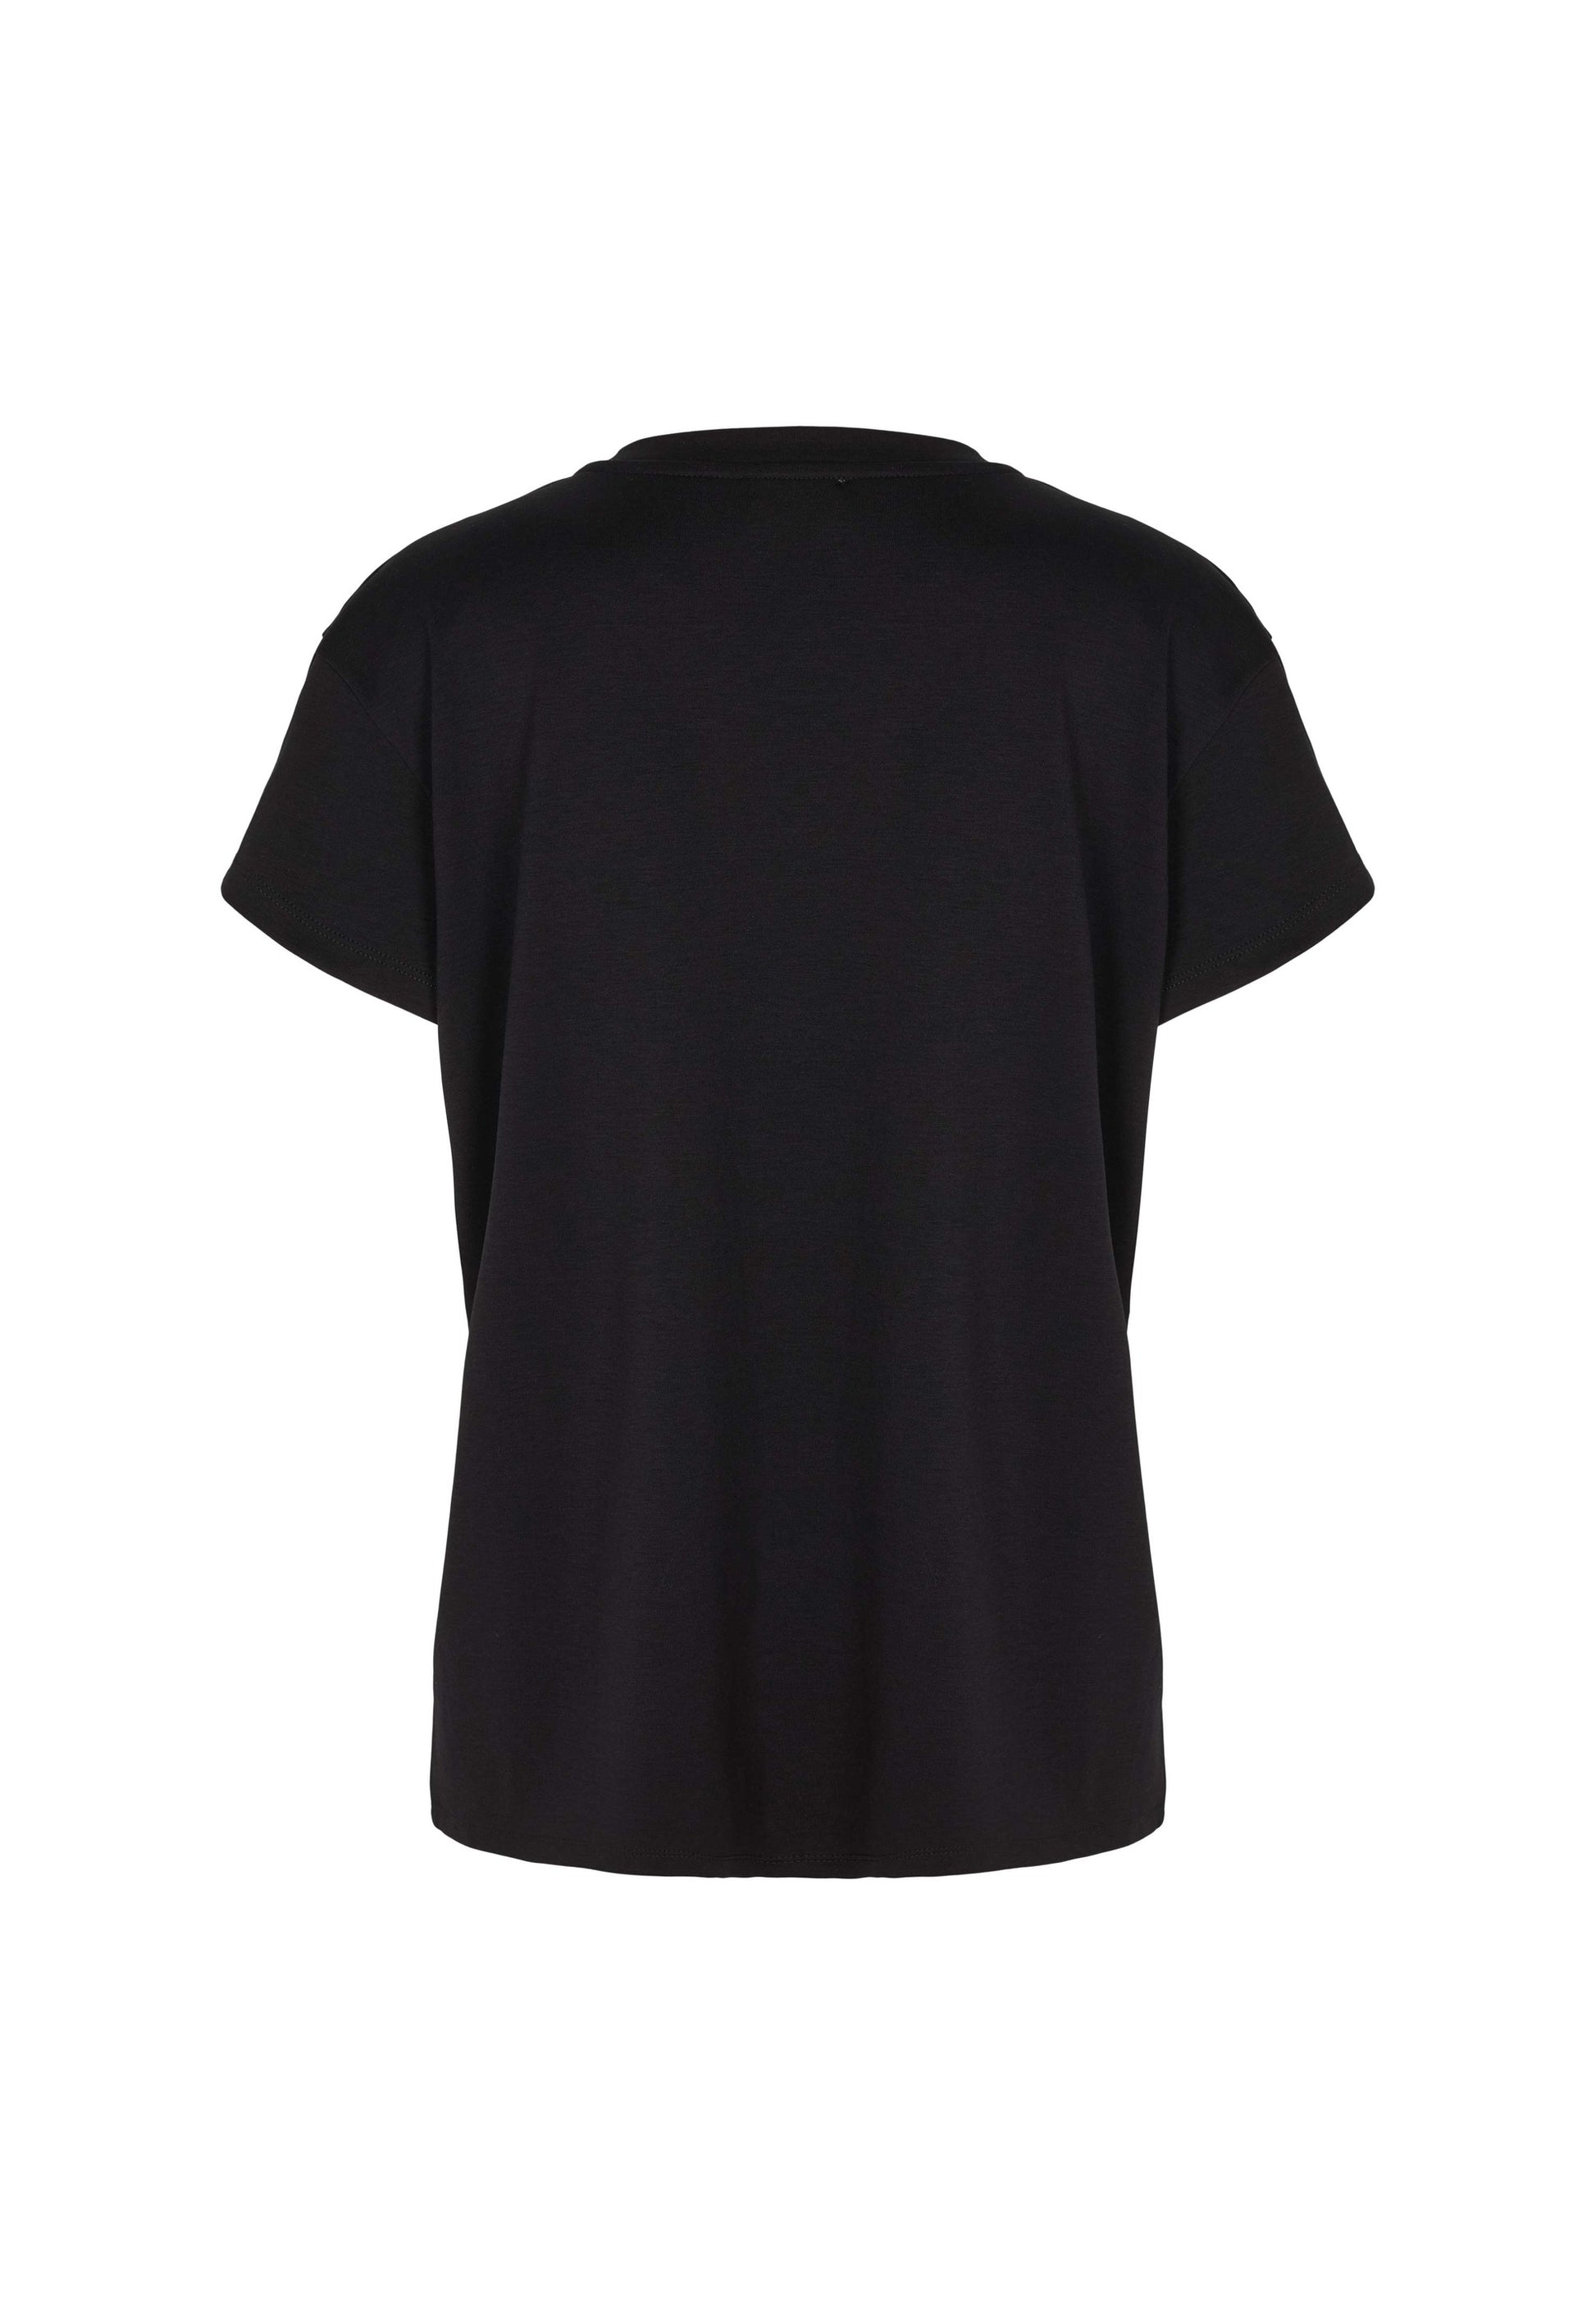 ECHTE SS T-shirt, T-shirts T-Shirts 01100 Black with print